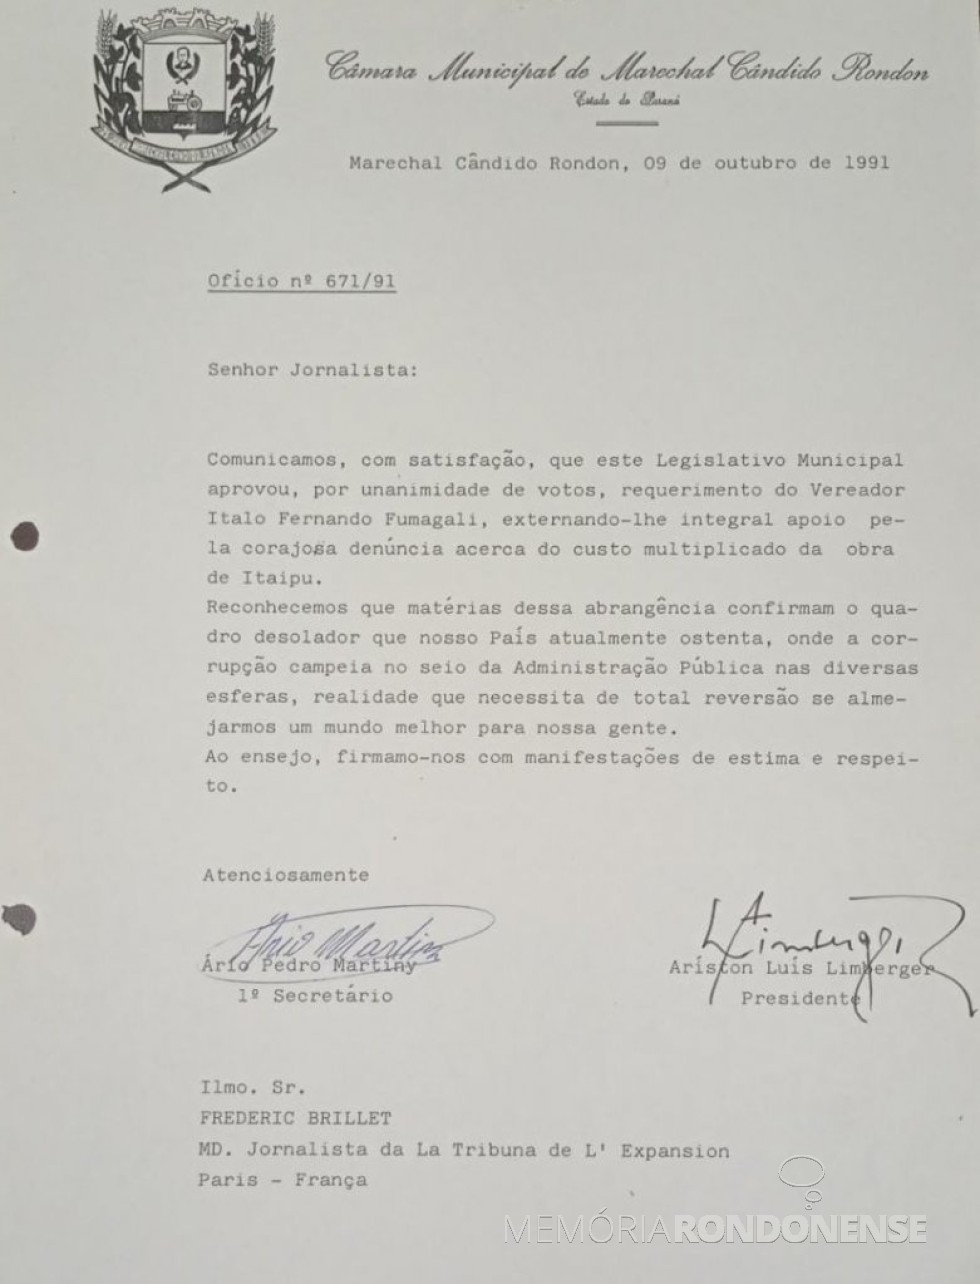 || Cópia do expediente encaminhado ao jornalista francês Frederic Brillet pela CâMara Municipal de Marechal Cândido Rondon (PR), em outubro de 1991. Imagem: Acervo do Legislativo citado - FOTO 11 - 